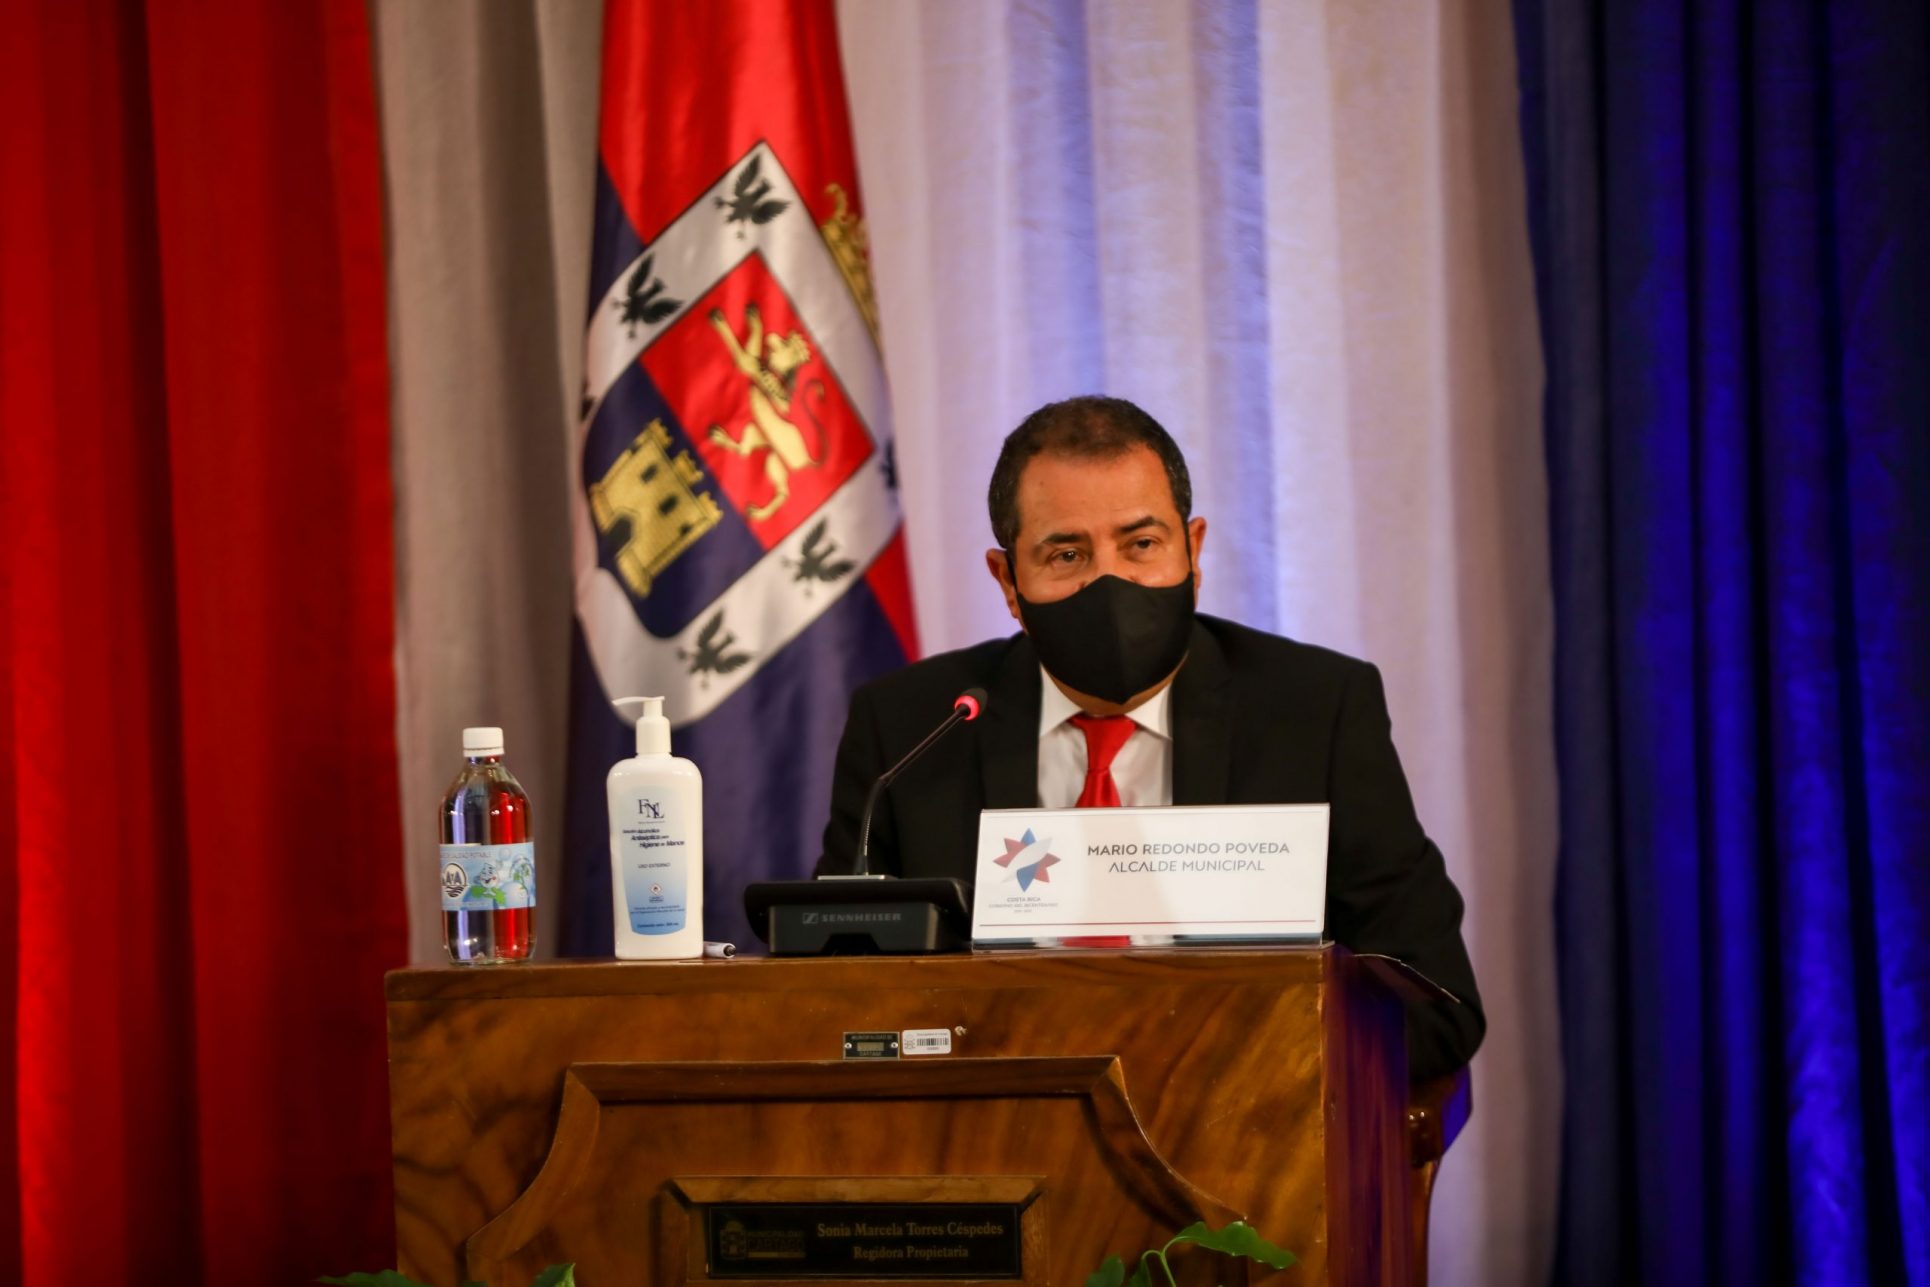 Alcalde Mario Redondo reclama que Gobierno no le da protagonismo a Cartago para el Bicentenario